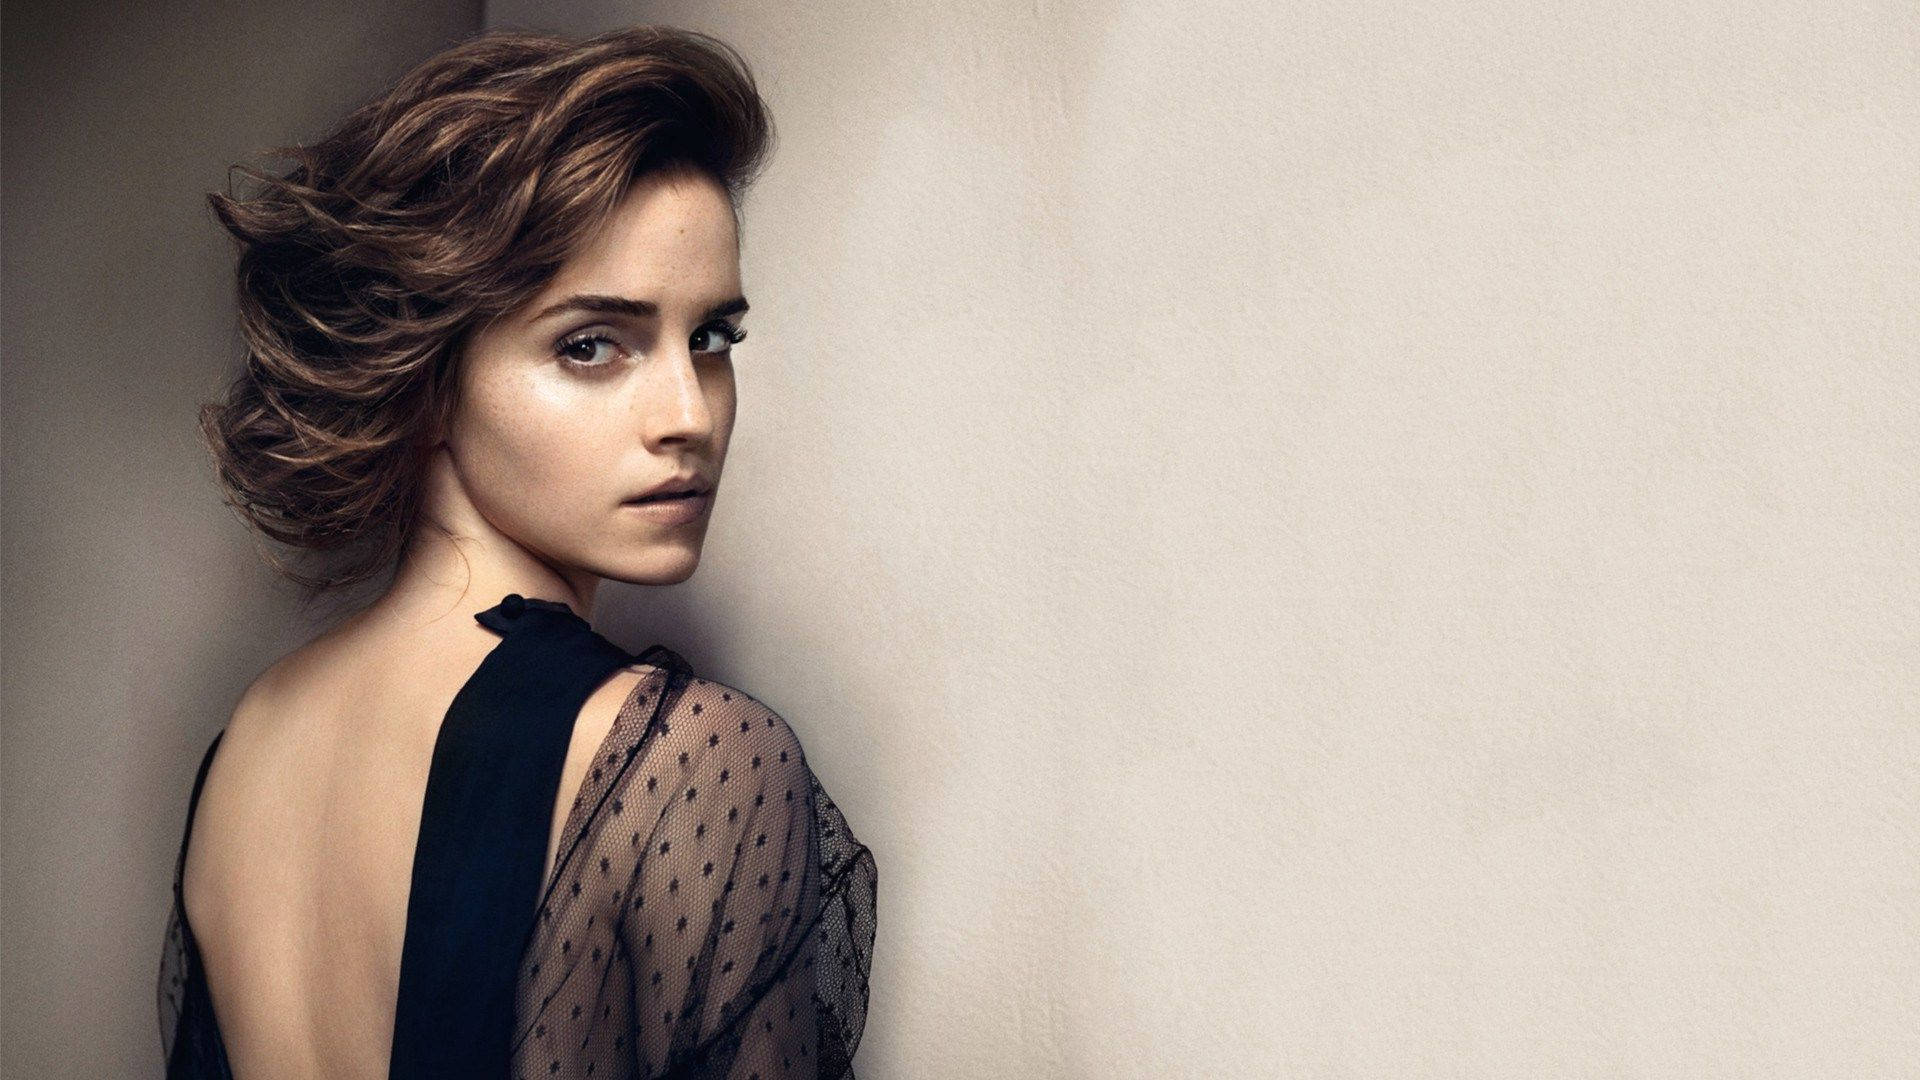 Emma Watson Looking Elegant In Backless Art Background